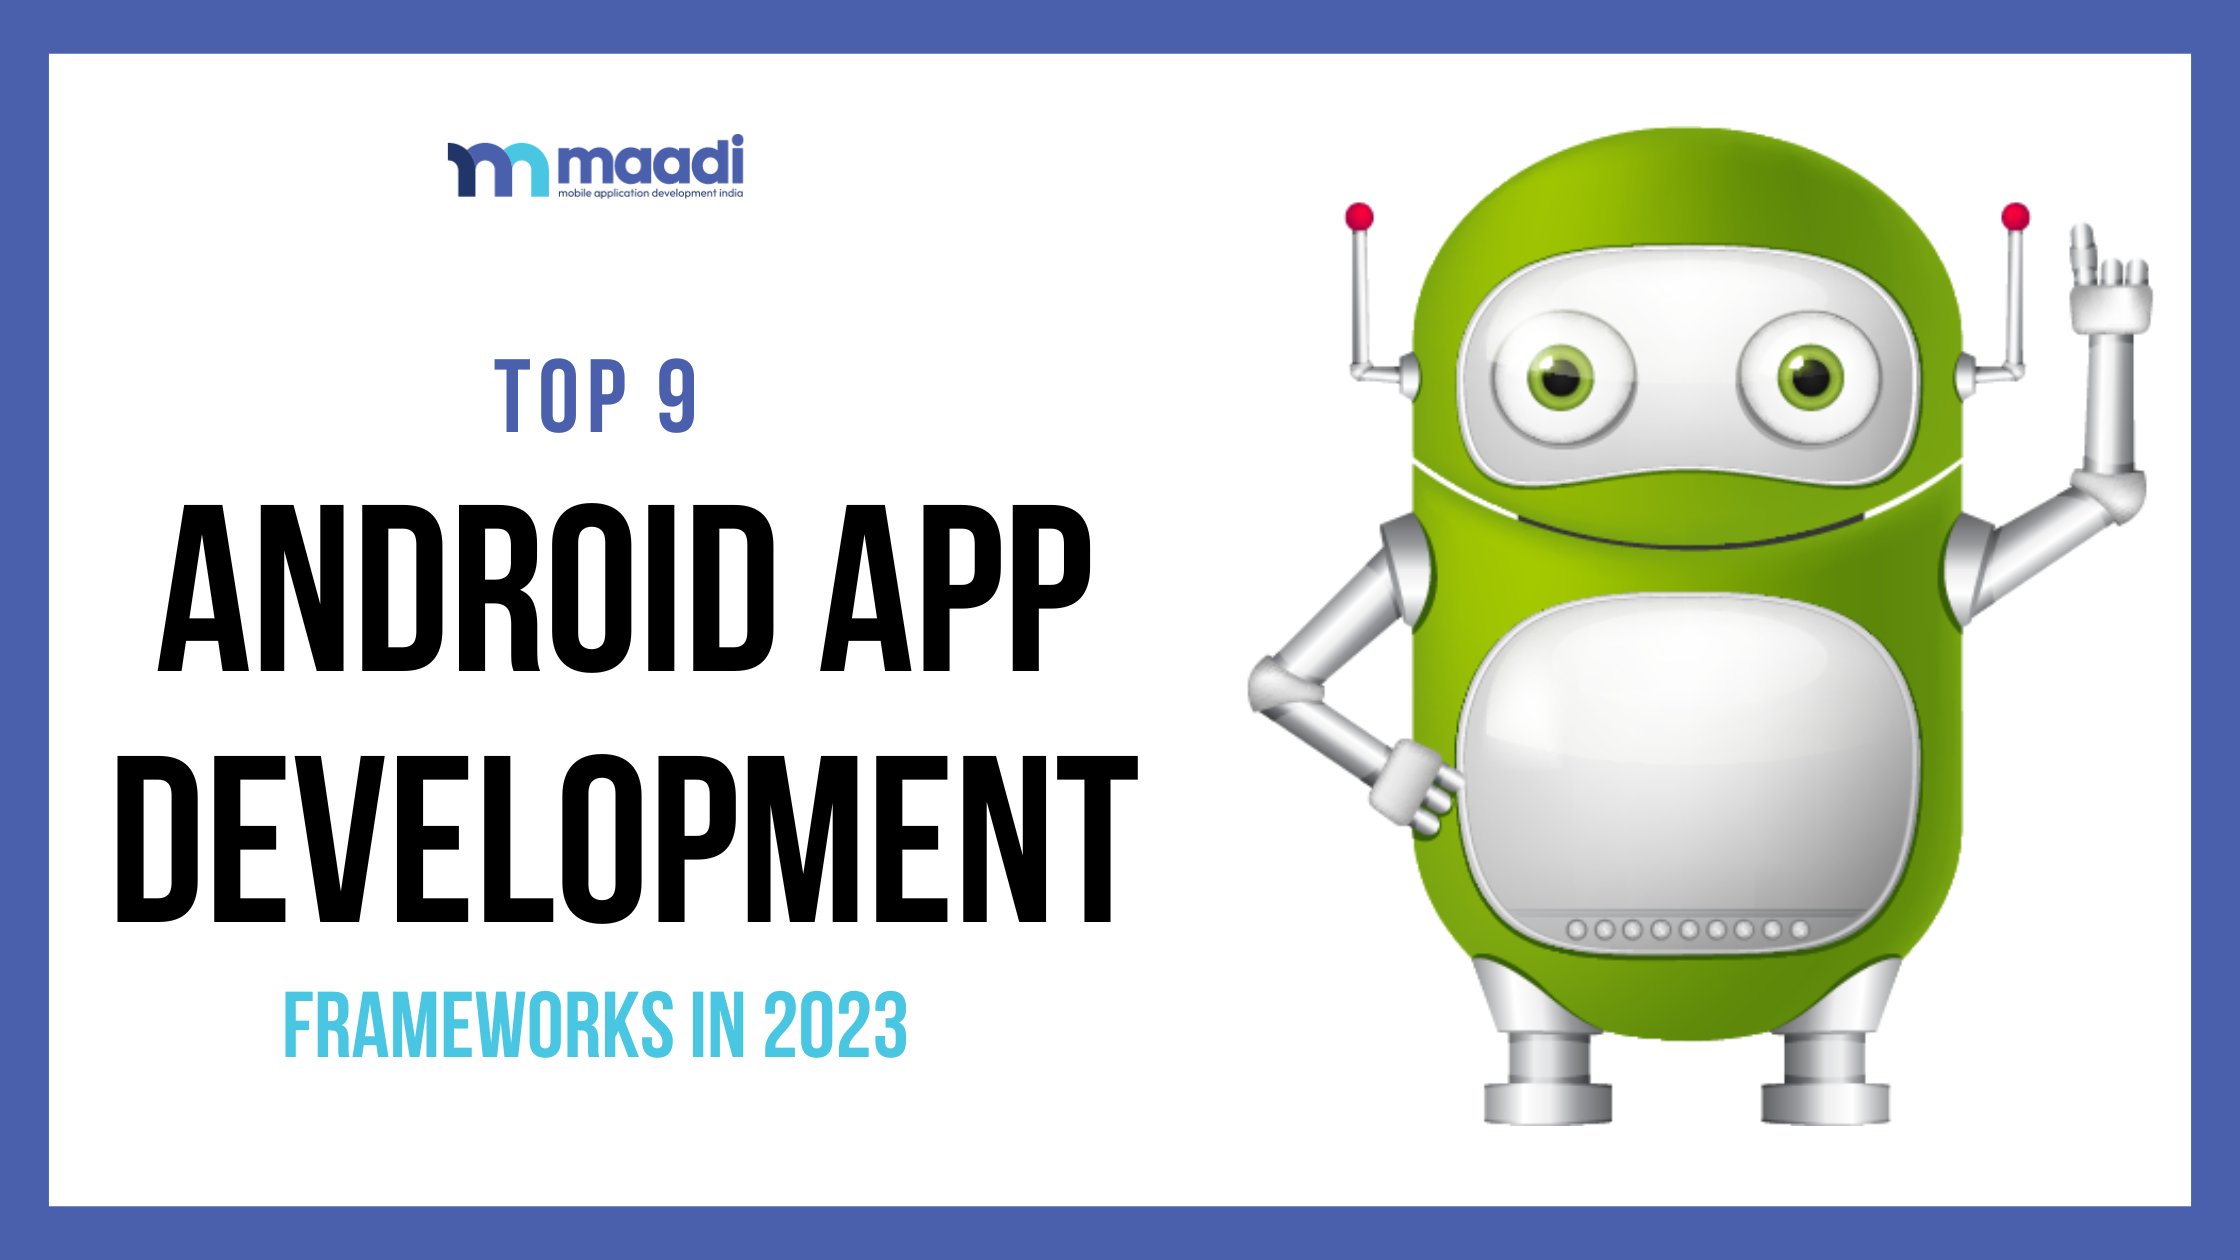 Frameworks for Android App Development